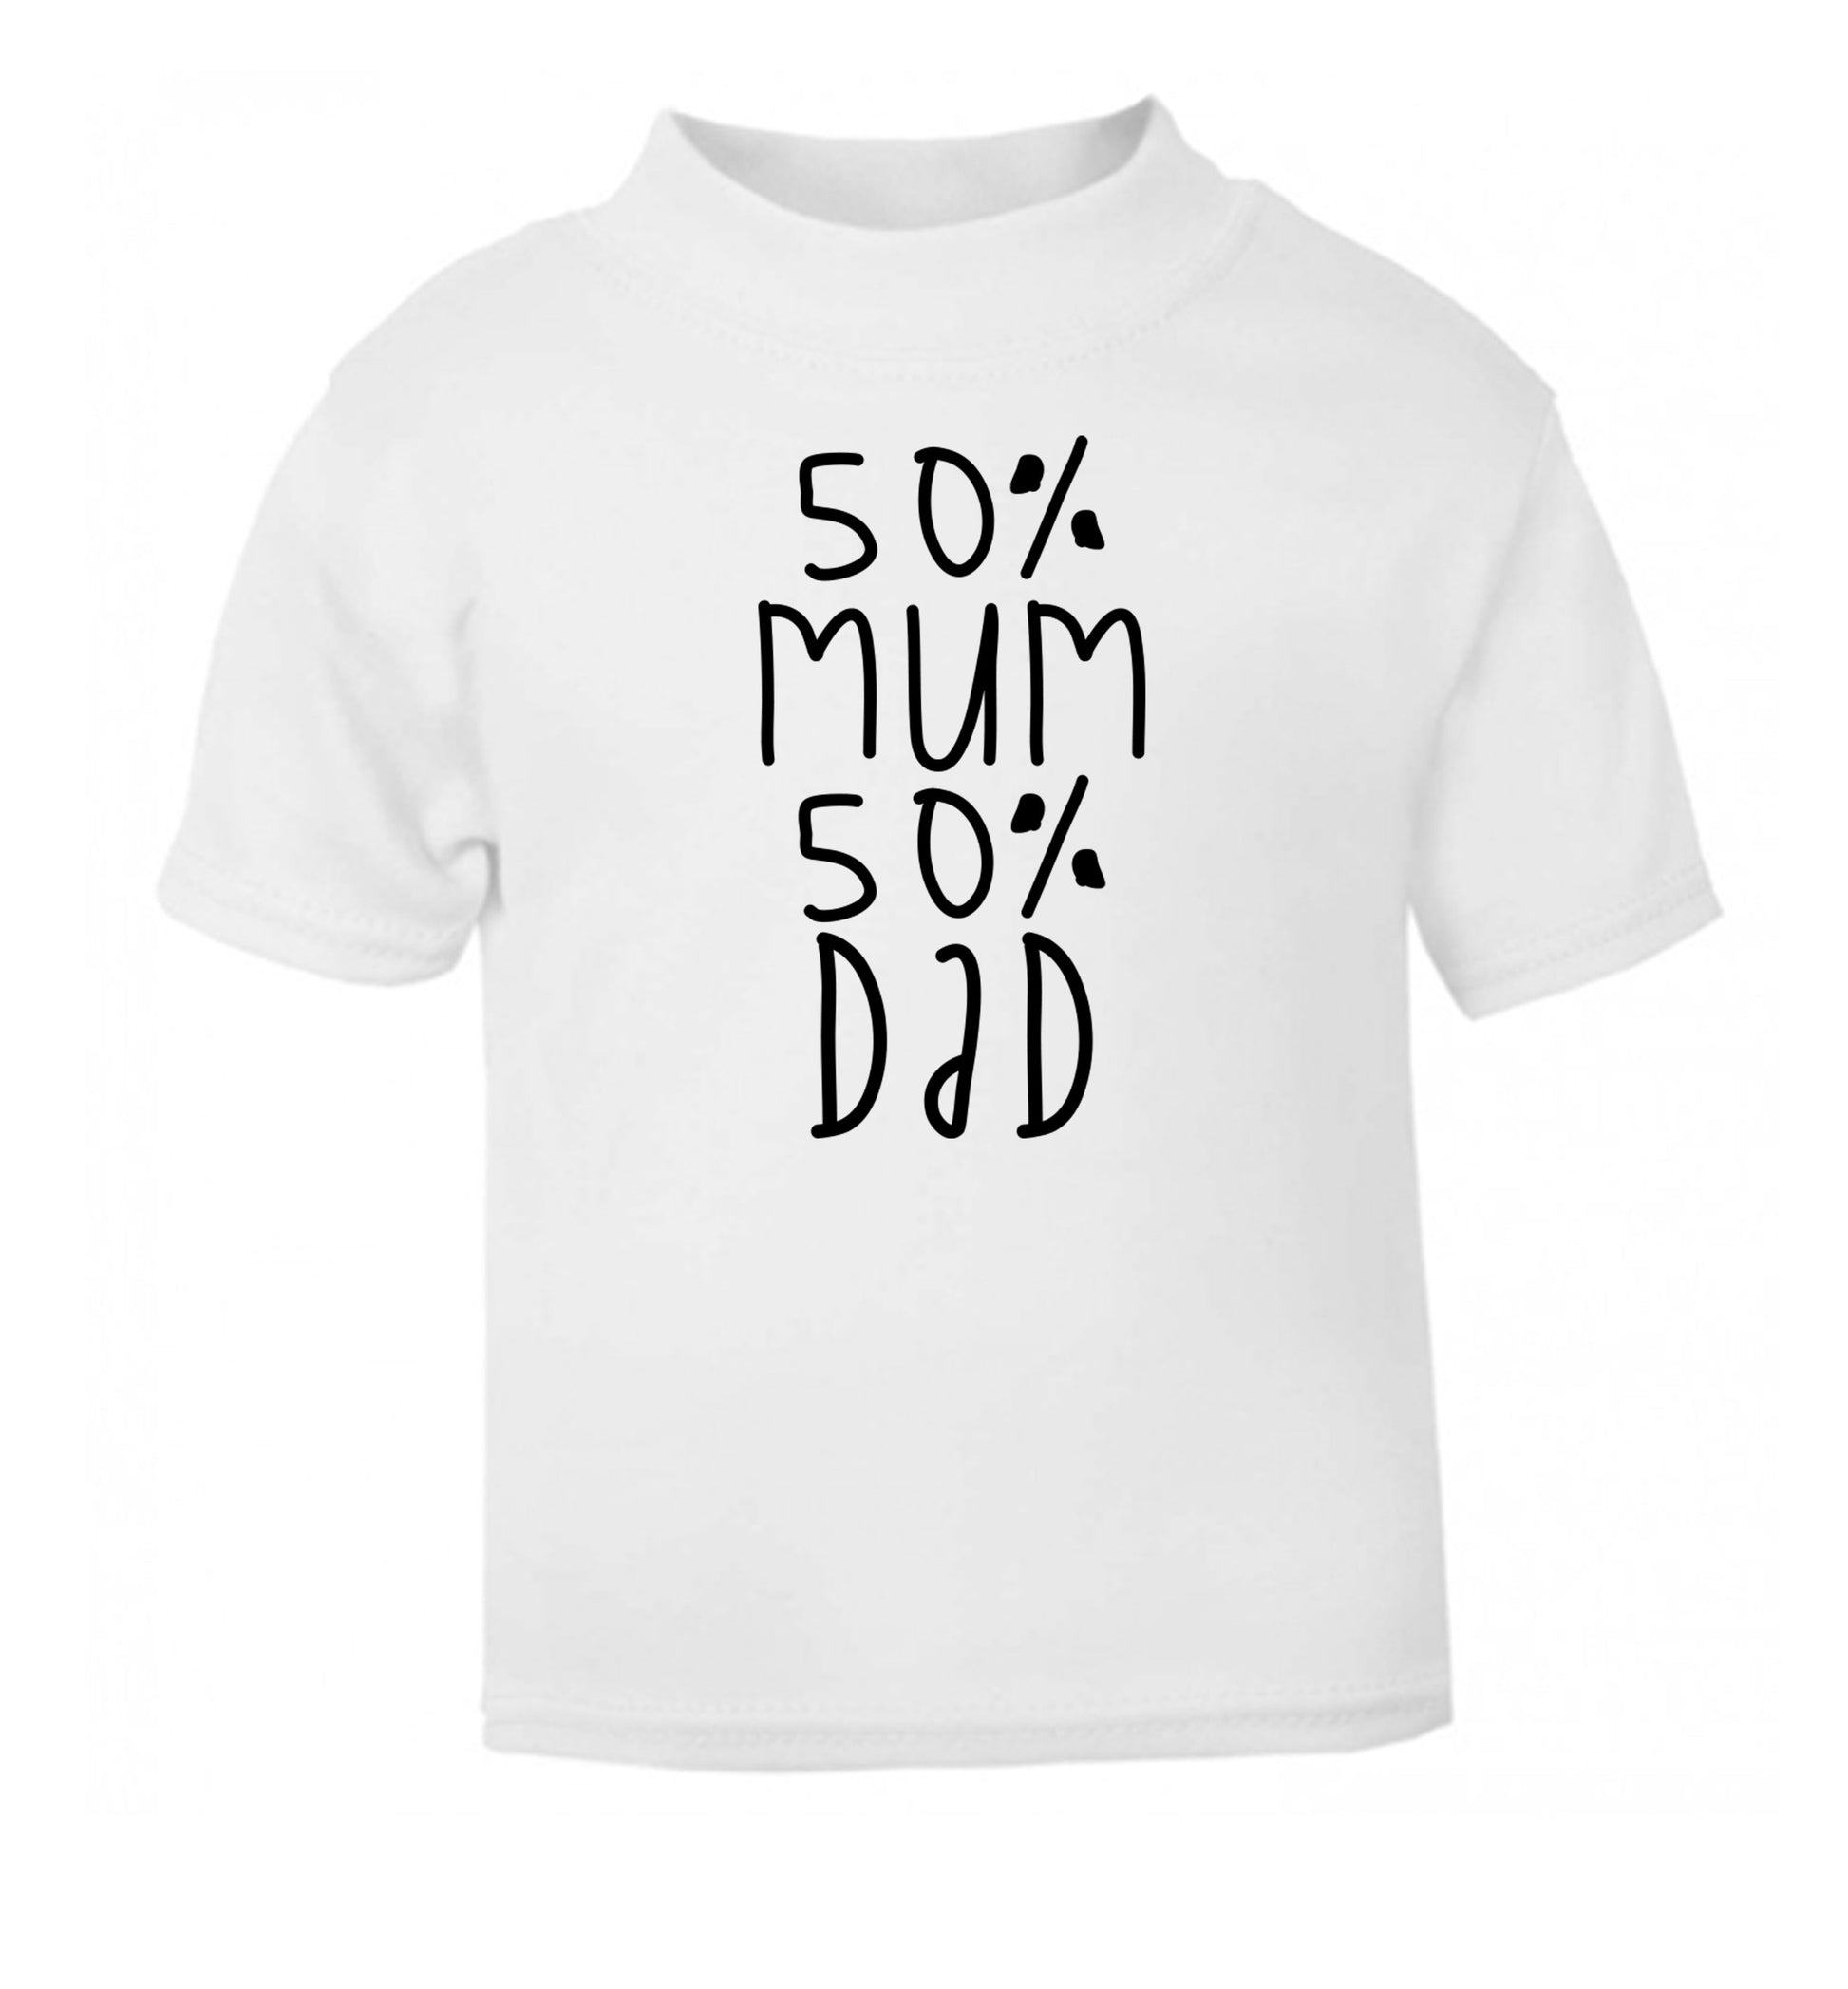 50% mum 50% dad white Baby Toddler Tshirt 2 Years